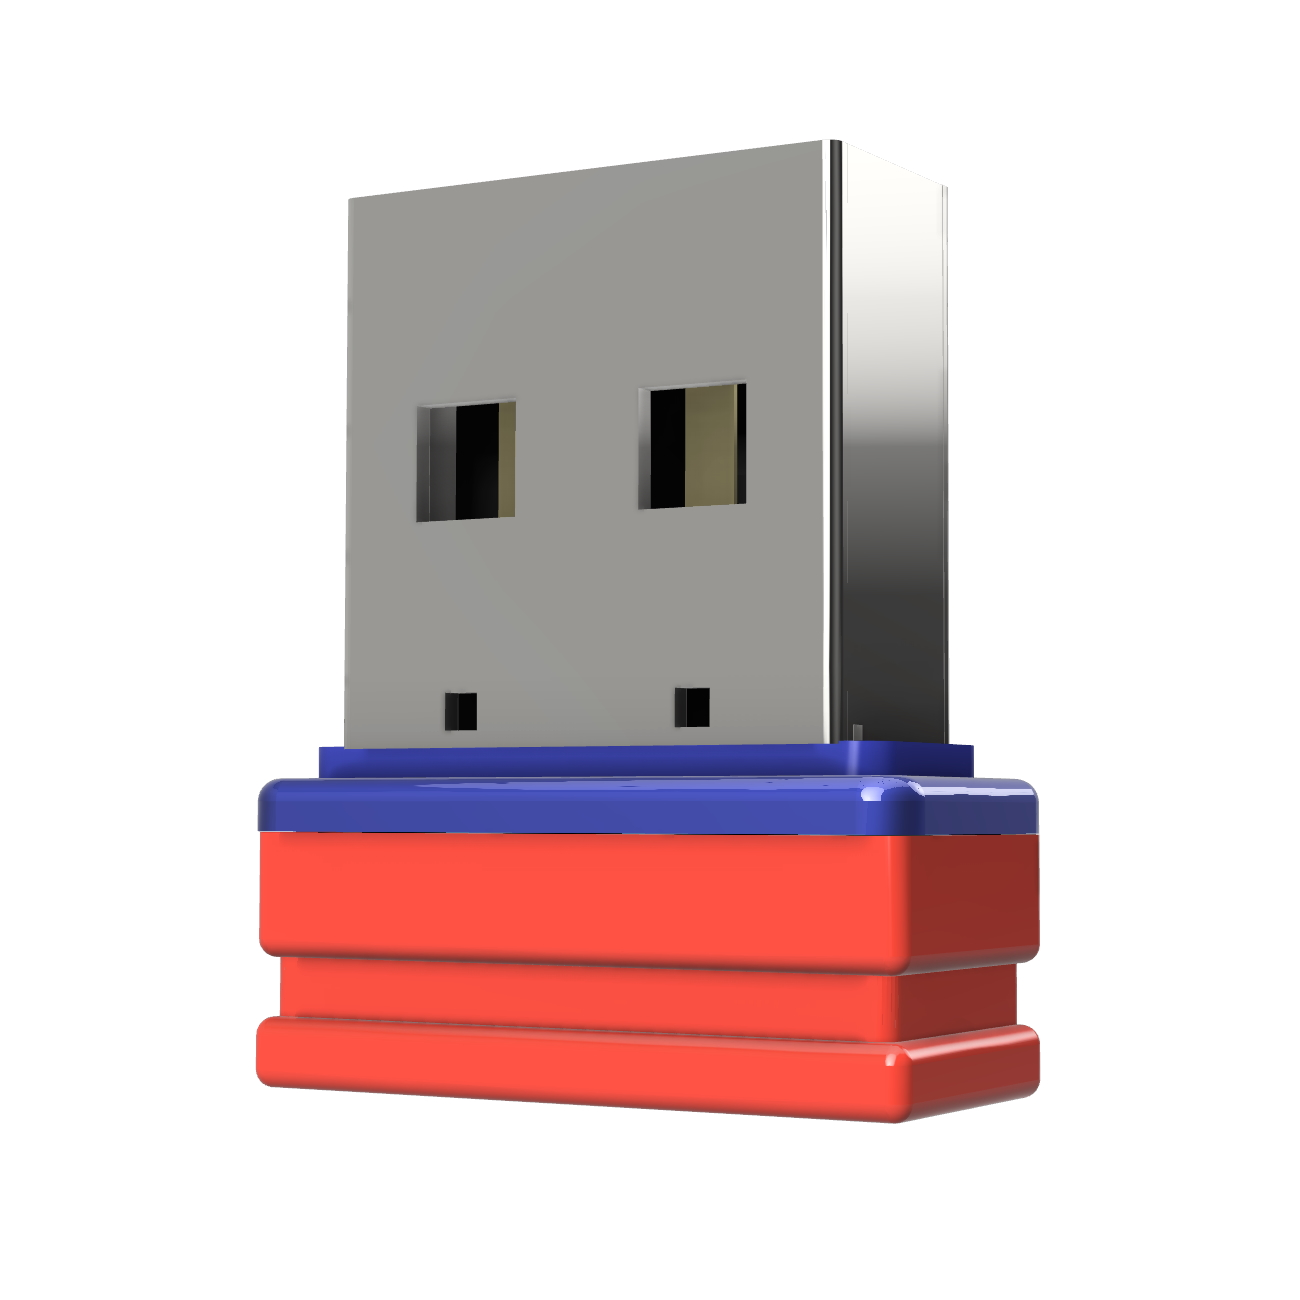 USB 4 USB-Stick Mini (Rot/Blau, GERMANY GB) P1 ®ULTRA